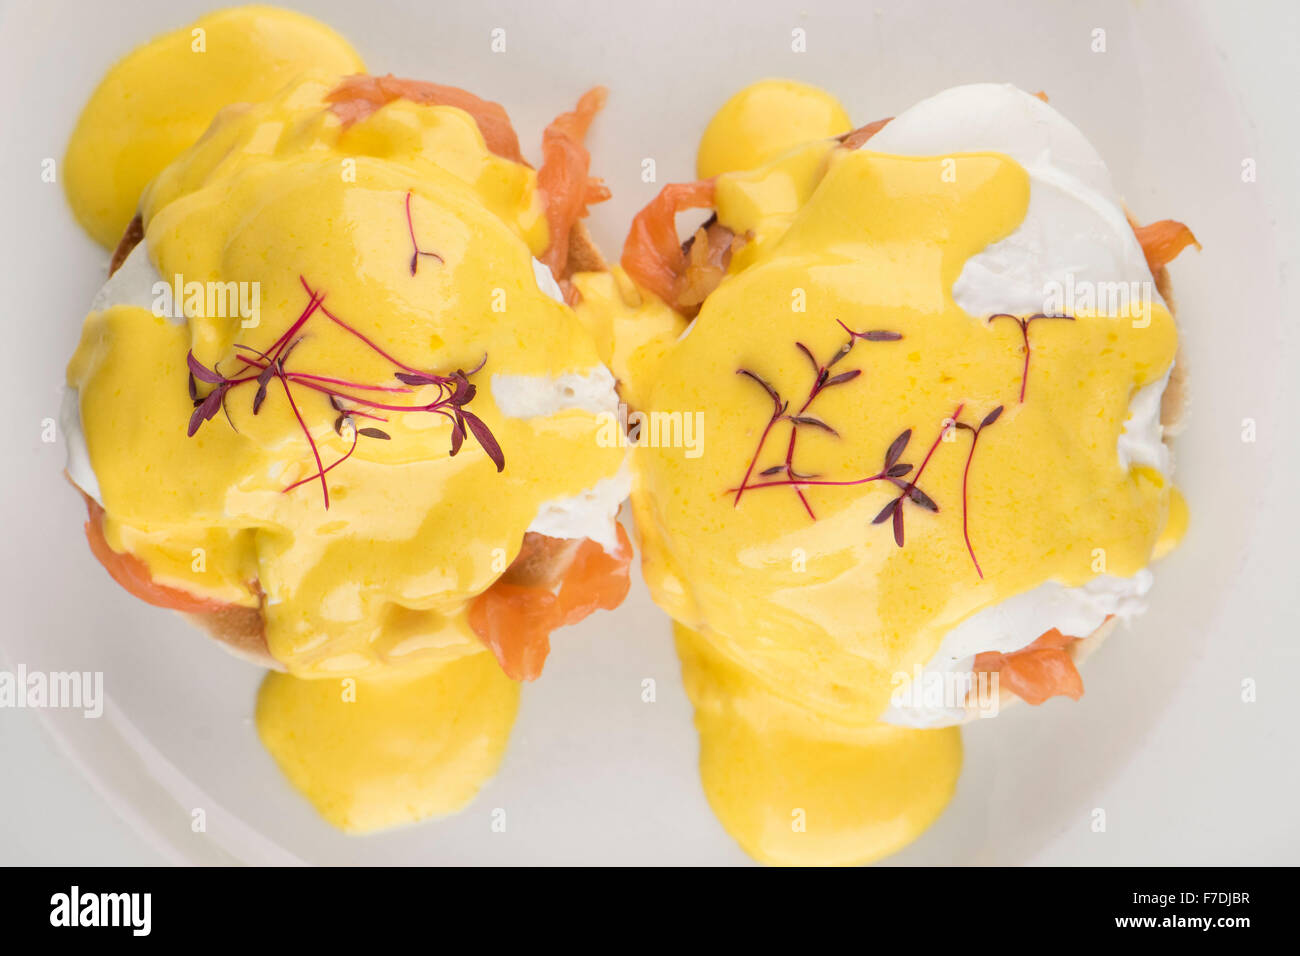 Uova Royale colazione consistente di un muffin inglese, salmone affumicato e uova con salsa olandese servito su una piastra bianca Foto Stock